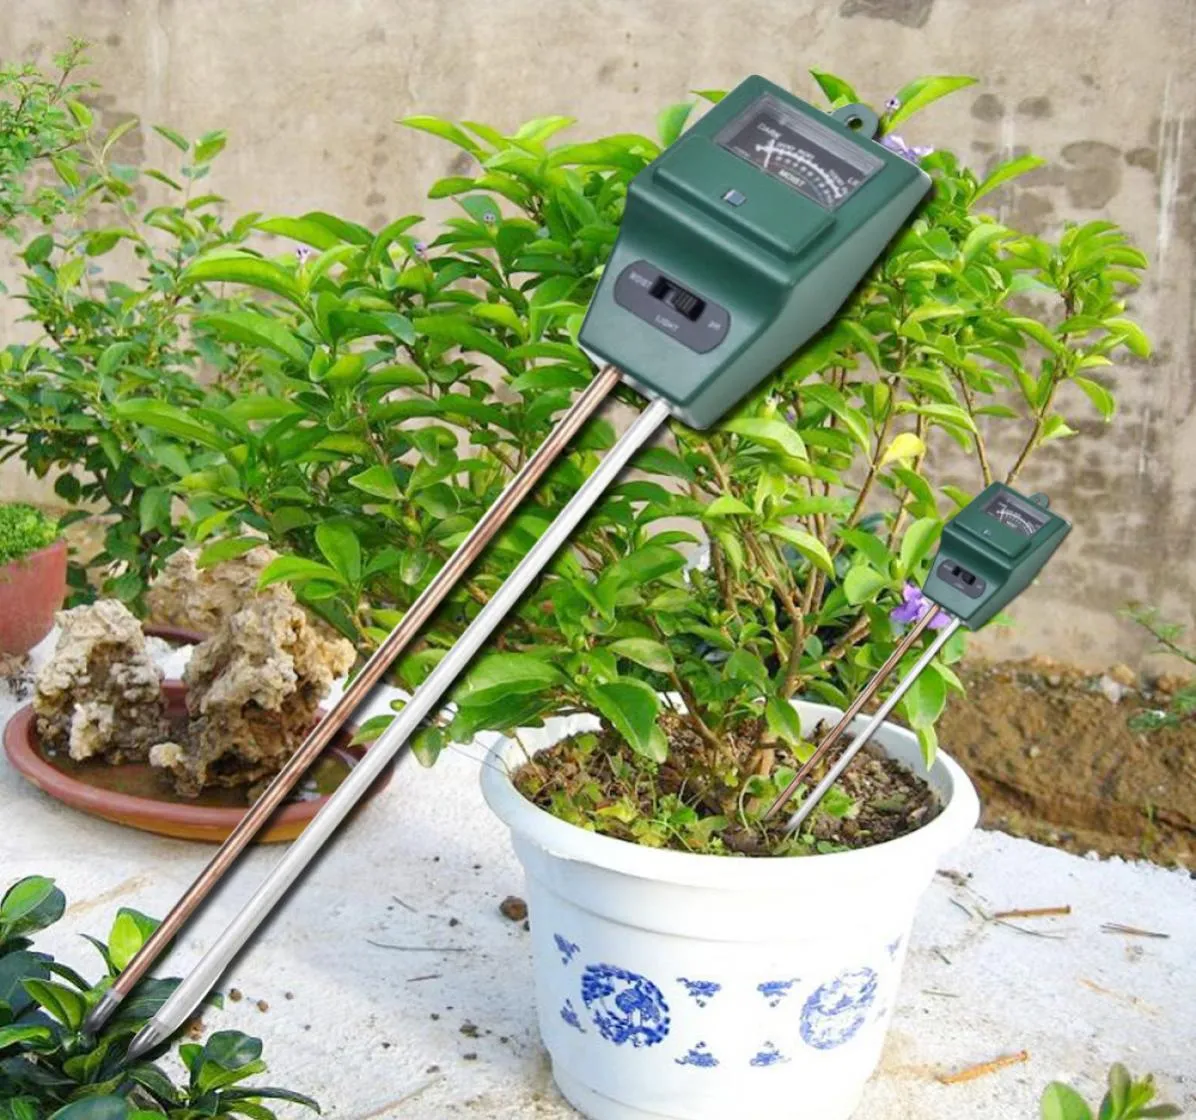 1 pH 테스터 토양 탐지기 물 수분 습도 가벼운 테스트 미터 센서가 정원 식물 꽃 6013593에 새로운 도착 3